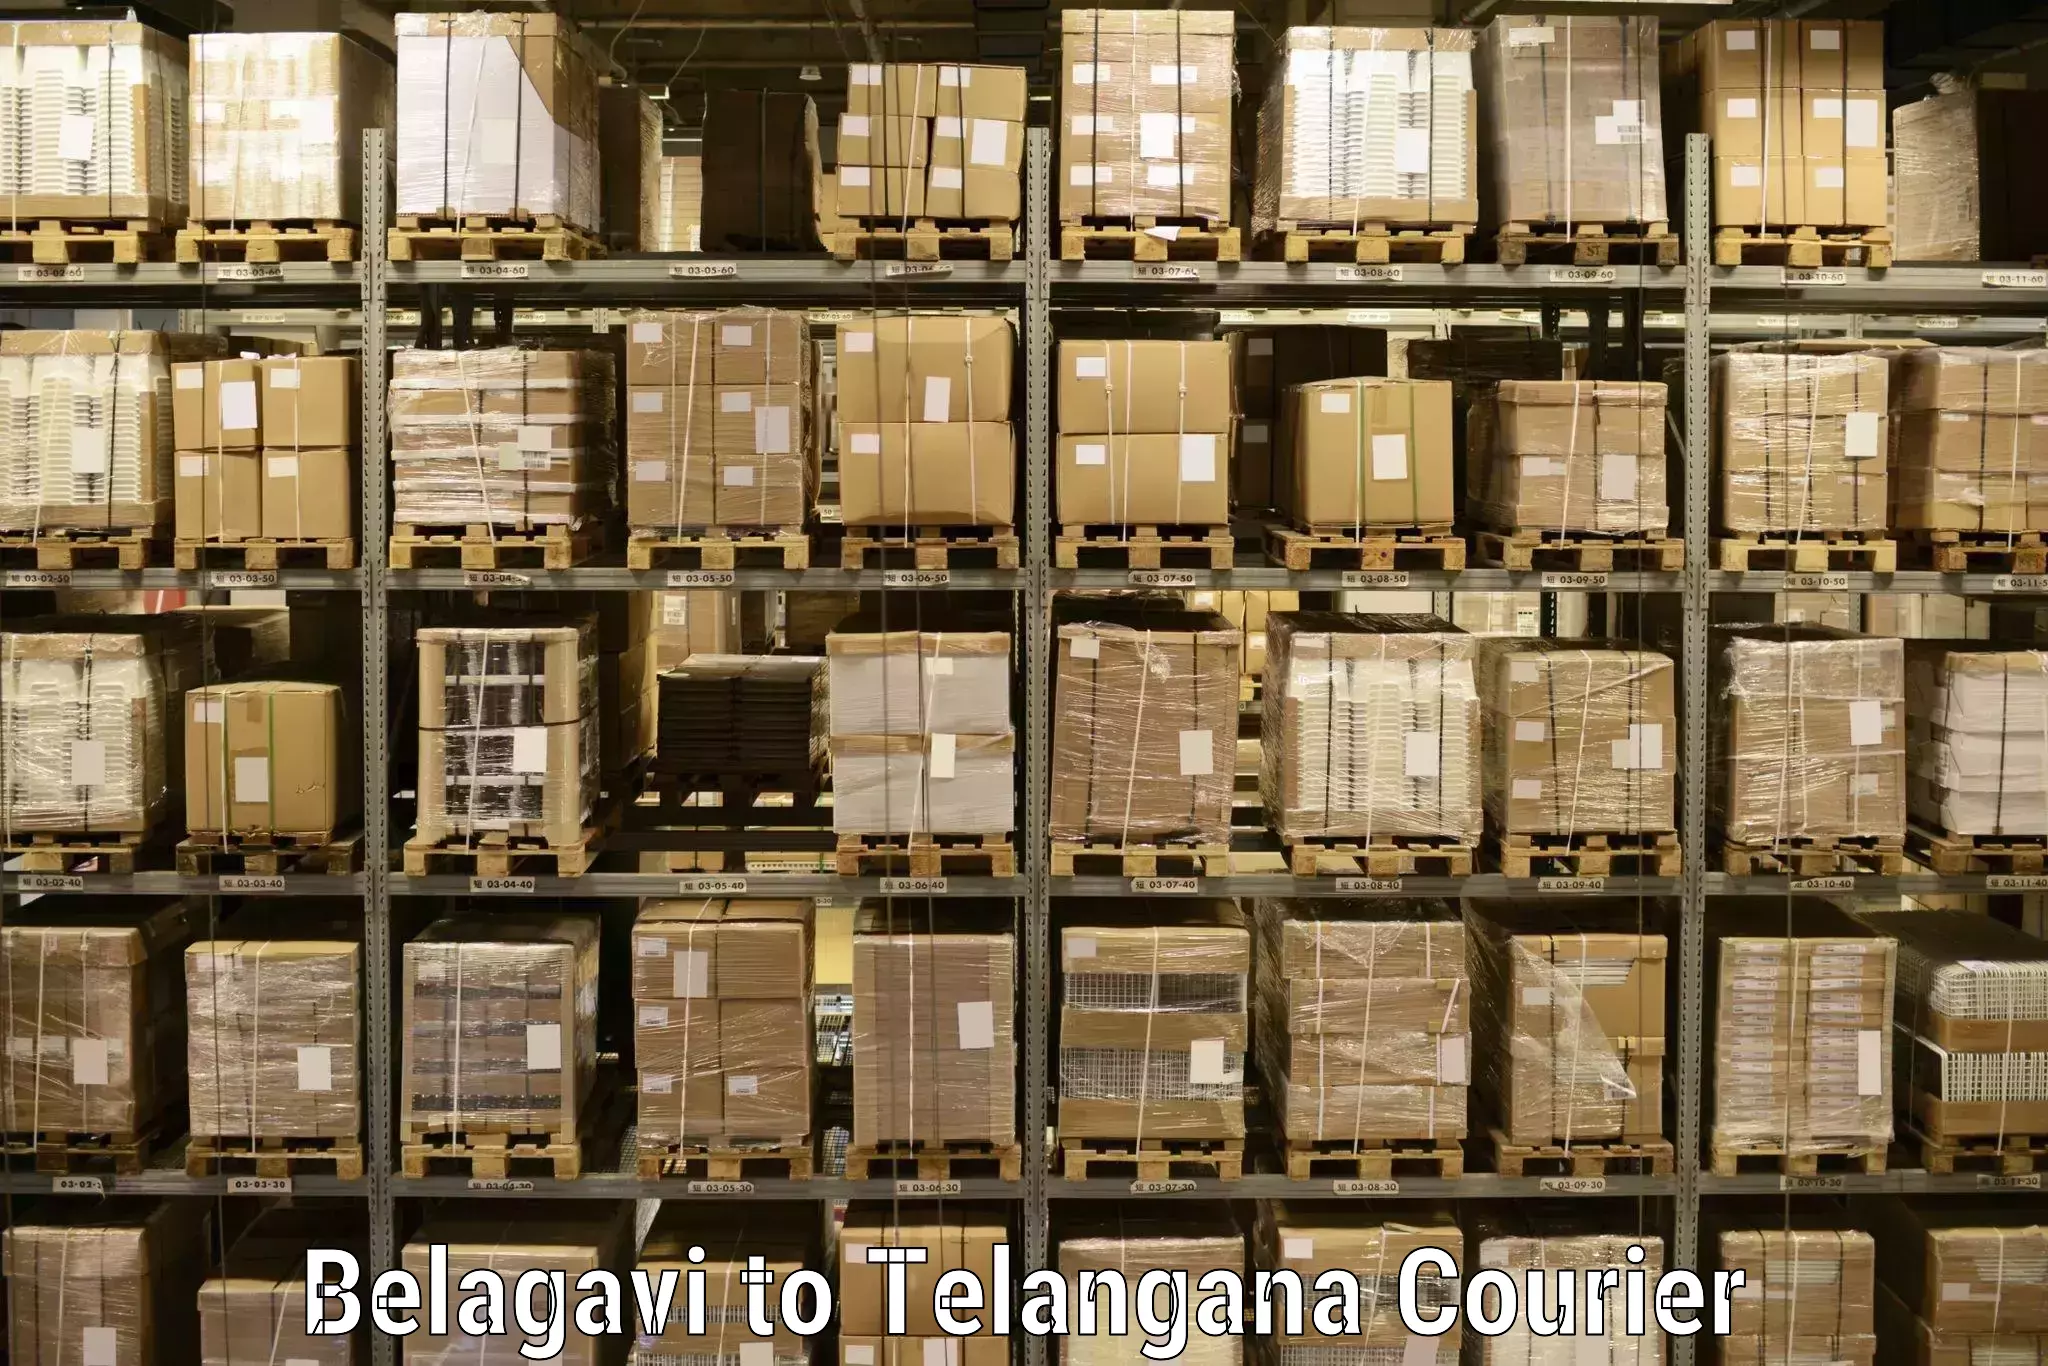 Pharmaceutical courier Belagavi to Thungathurthi